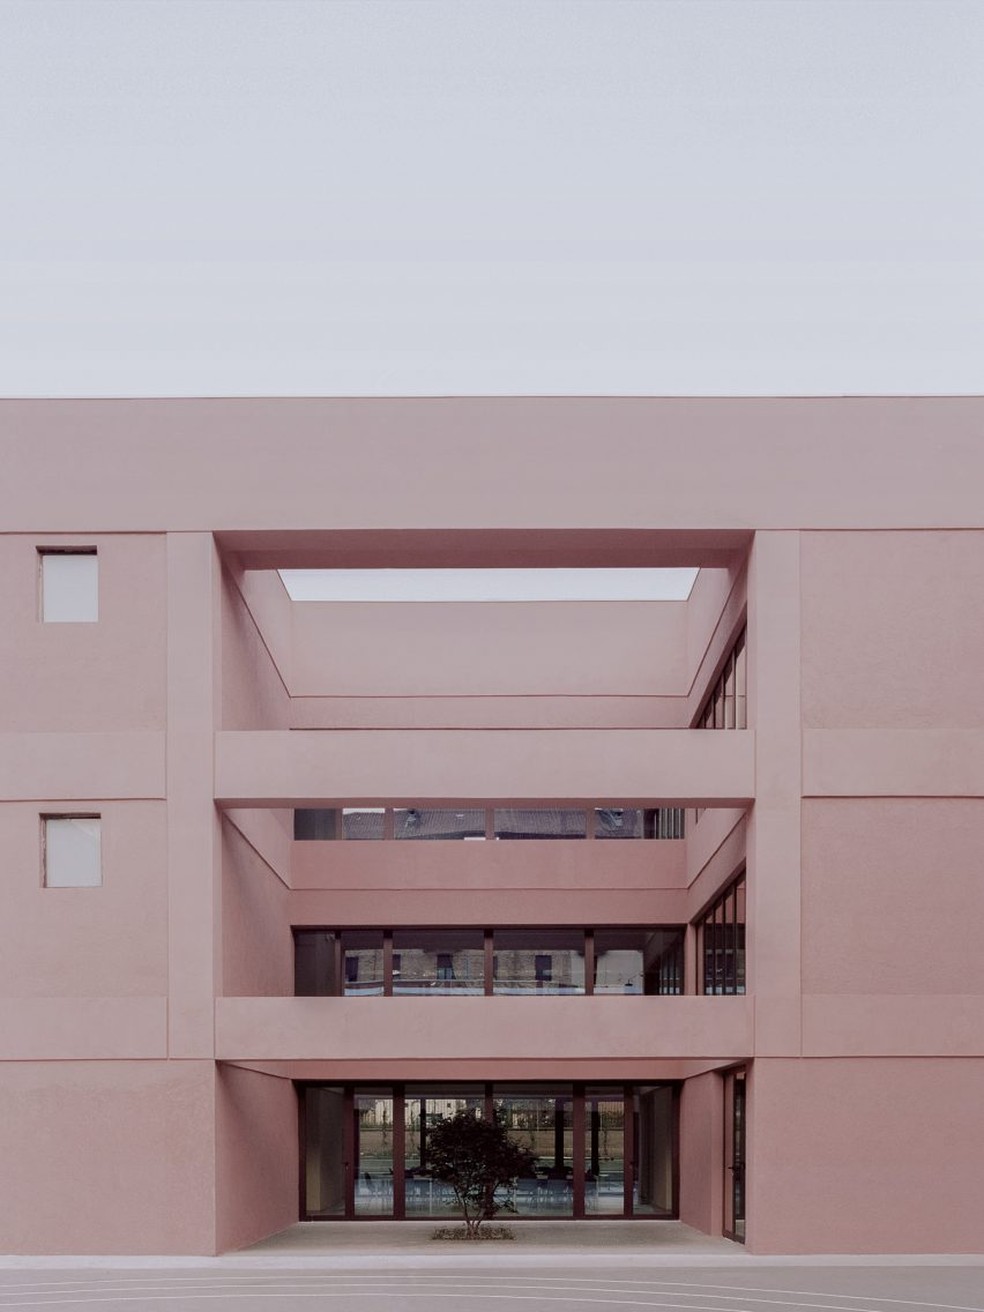 Fachada da escola Enrico Fermi em Turim, na Itália — Foto:  Simone Bossi/Divulgação